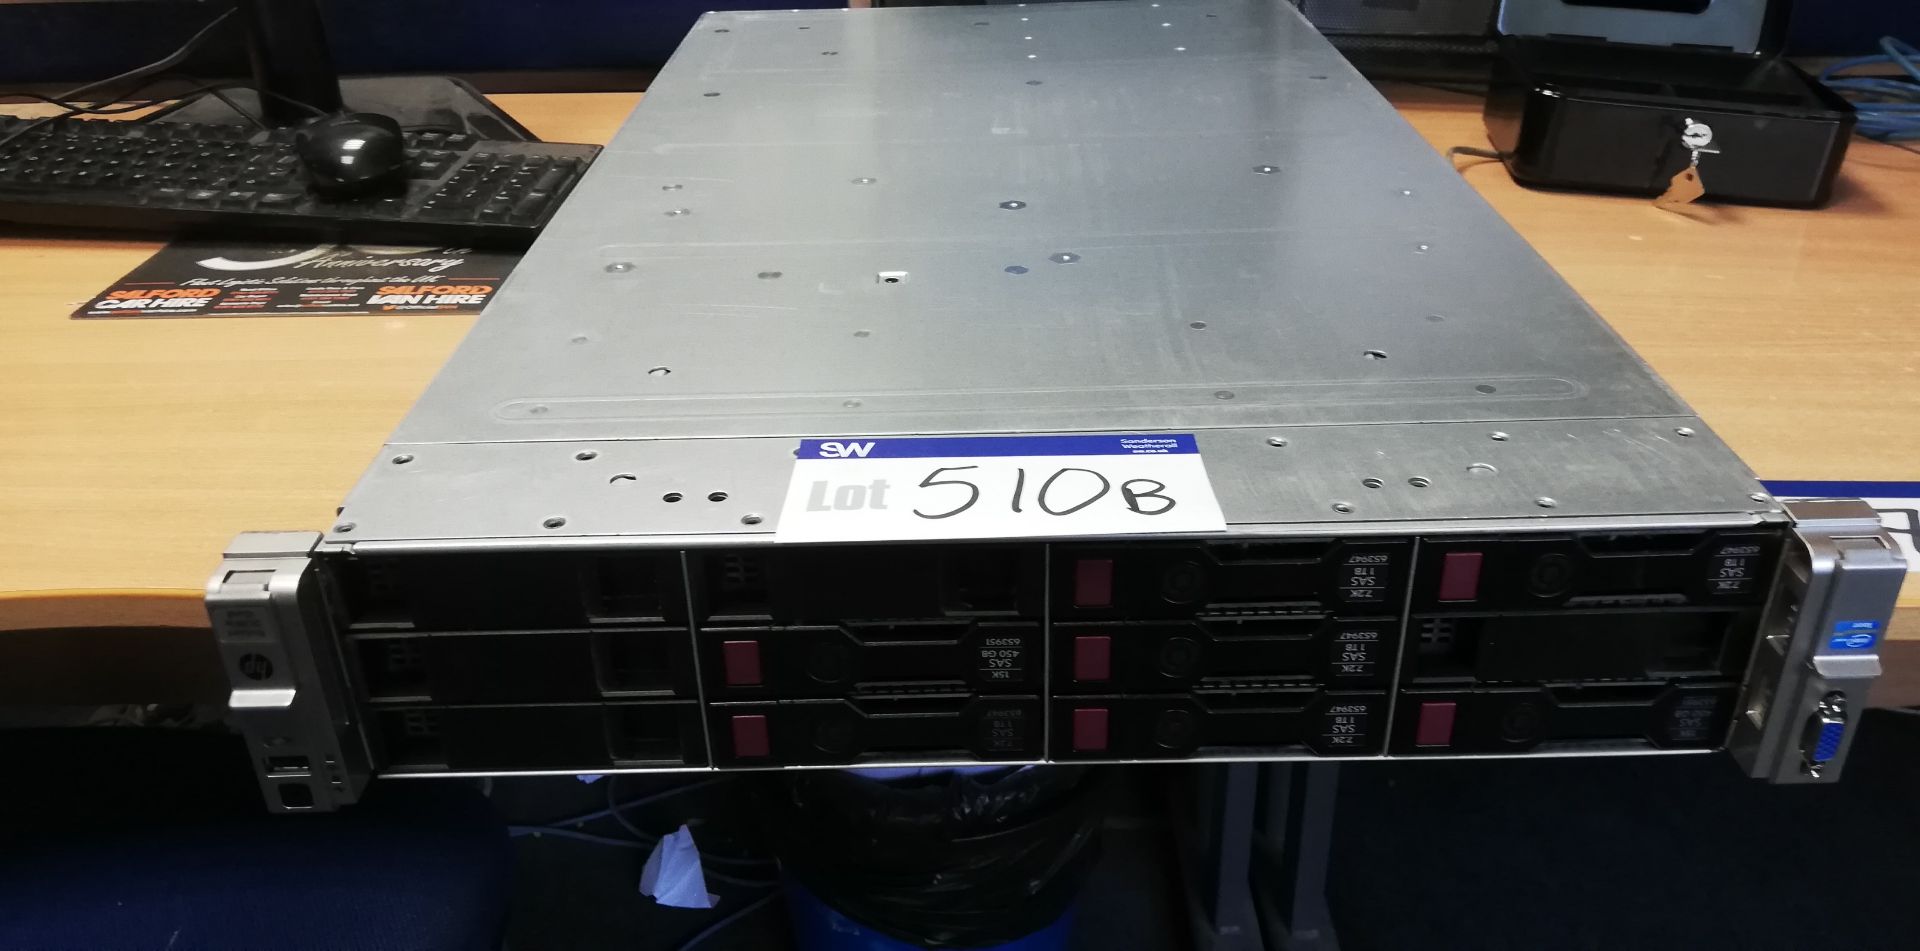 HP Proliant DL380E Gen 8 Intel Inside Xeon Server (hard disk removed), serial no. CZJ40905N9 (lot